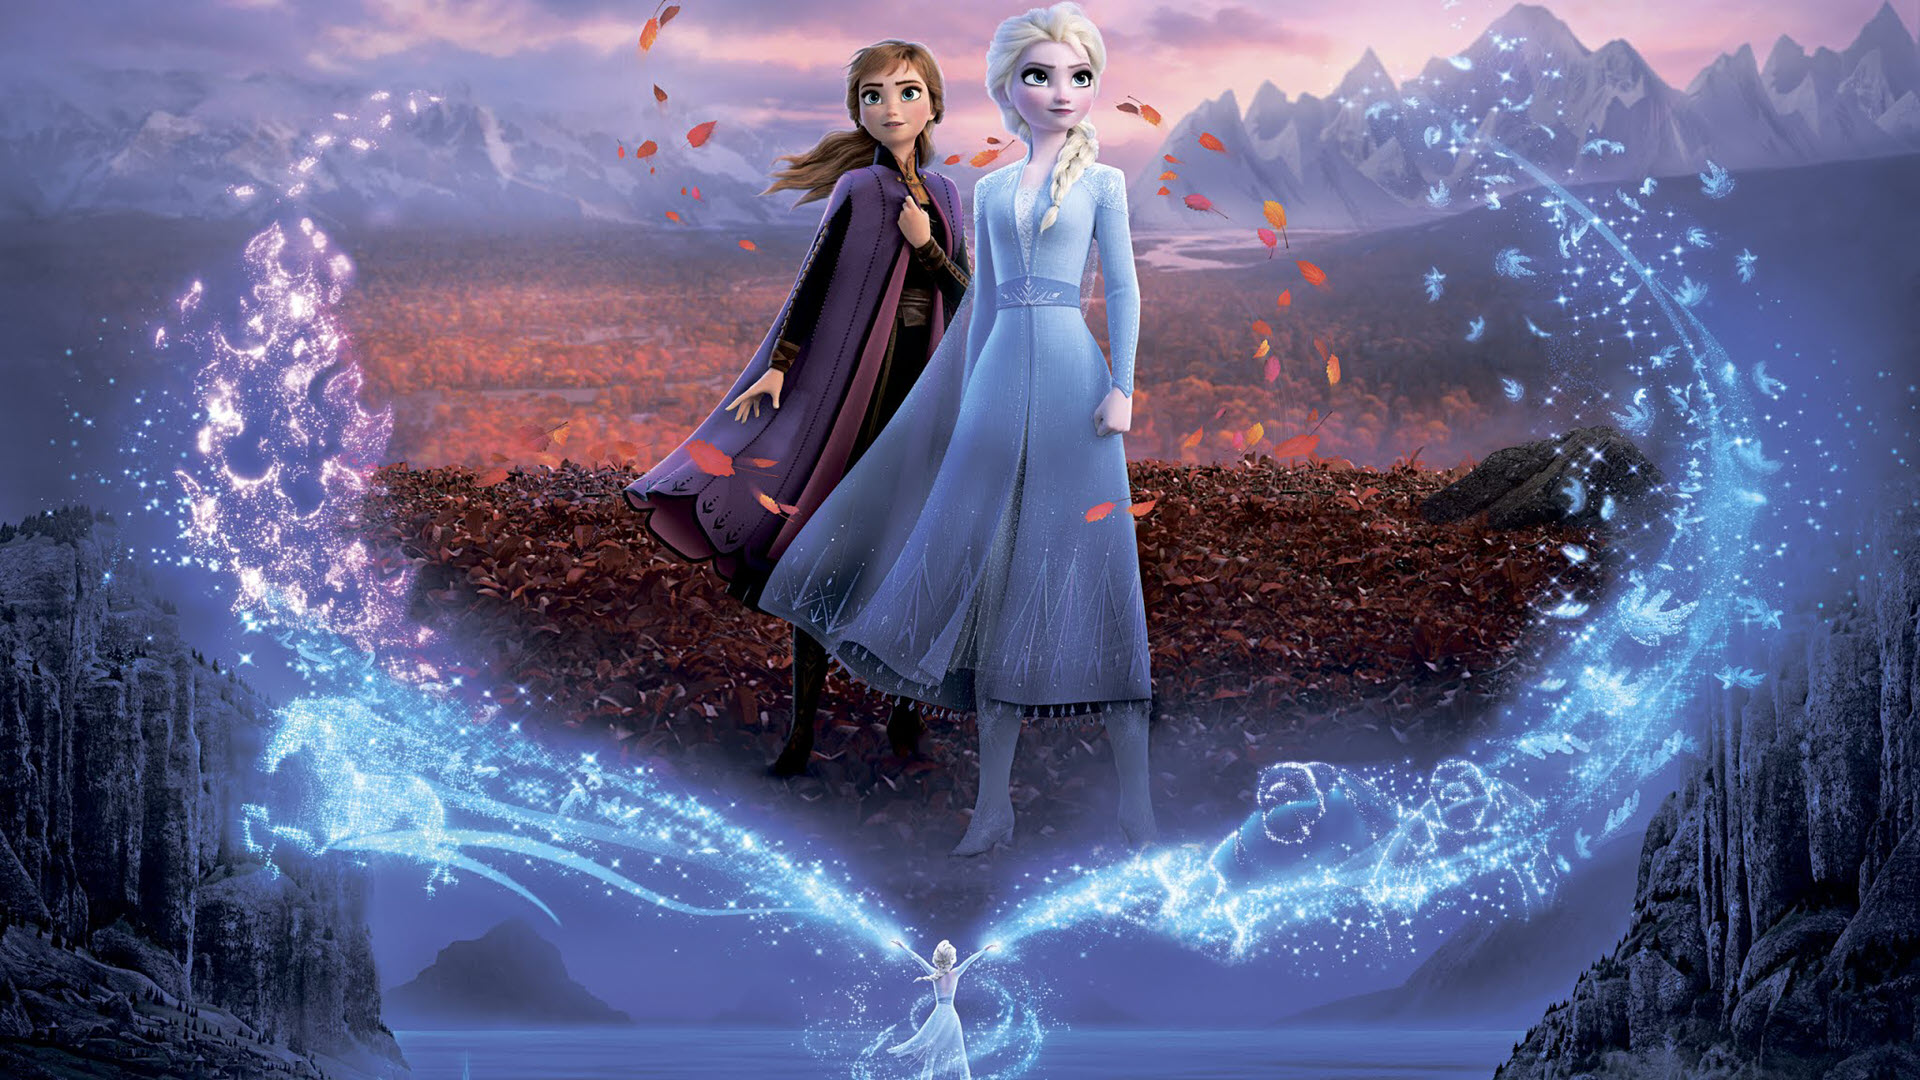 Nữ hoàng băng giá 2 hình nền - Elsa và Anna hình nền (43115994) - fanpop